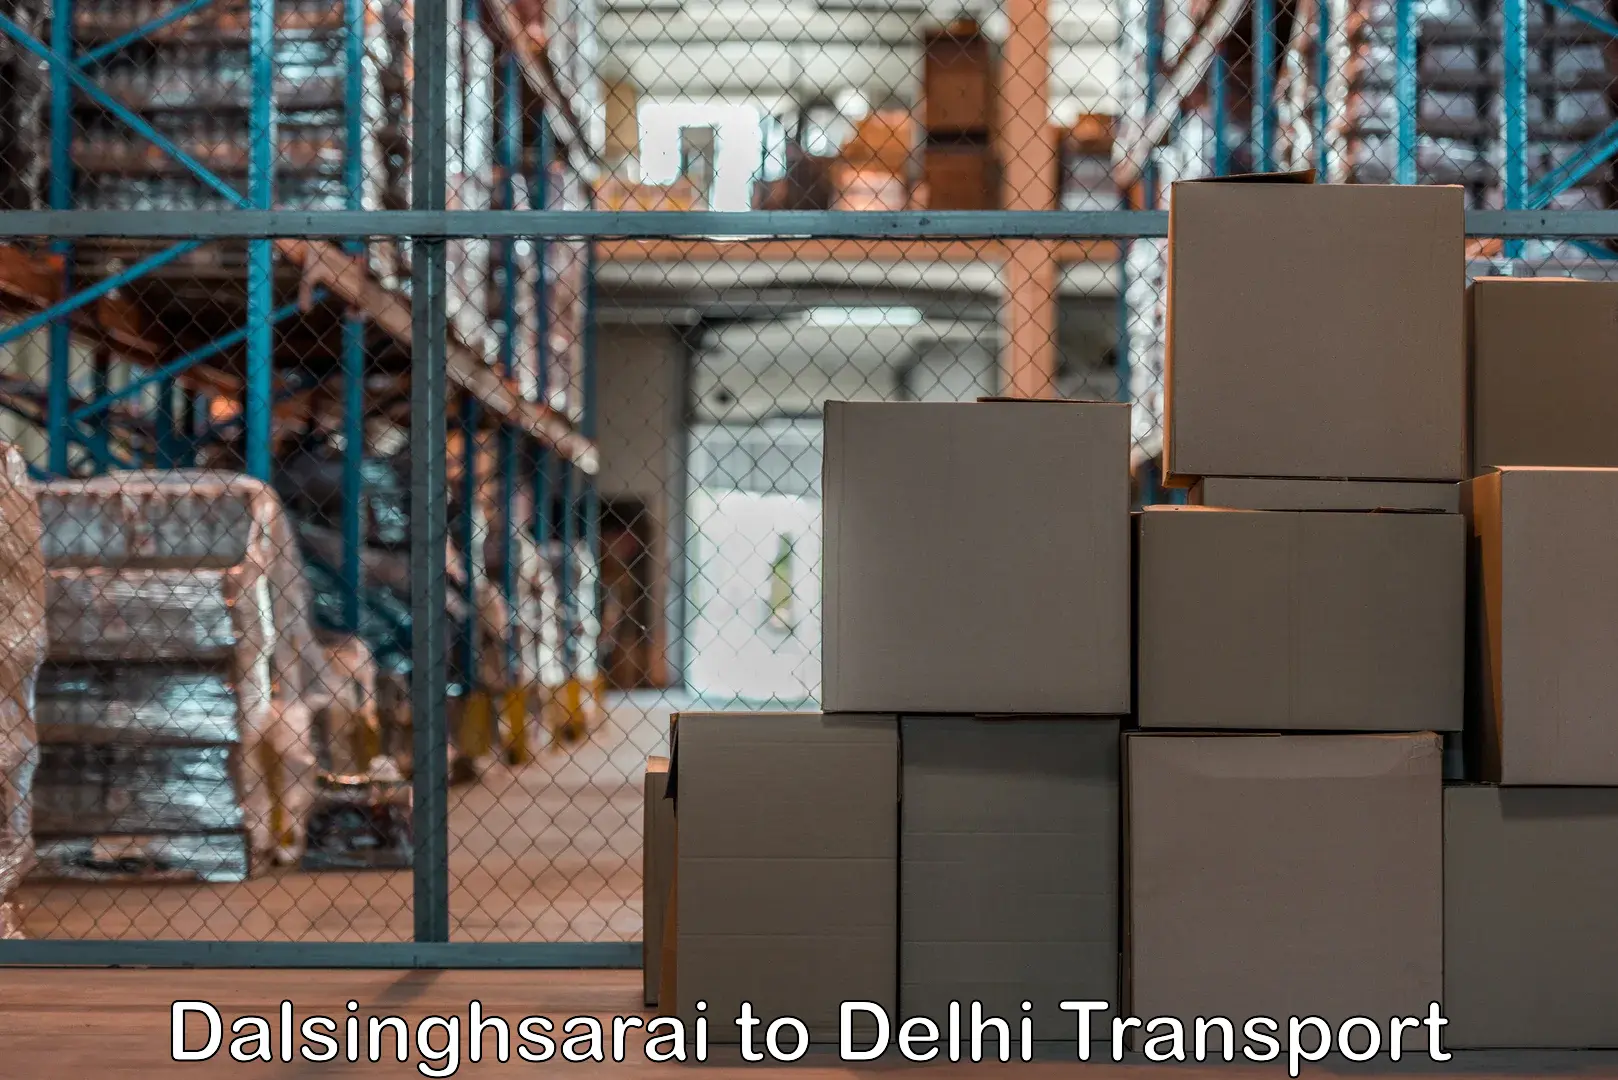 Delivery service Dalsinghsarai to Delhi